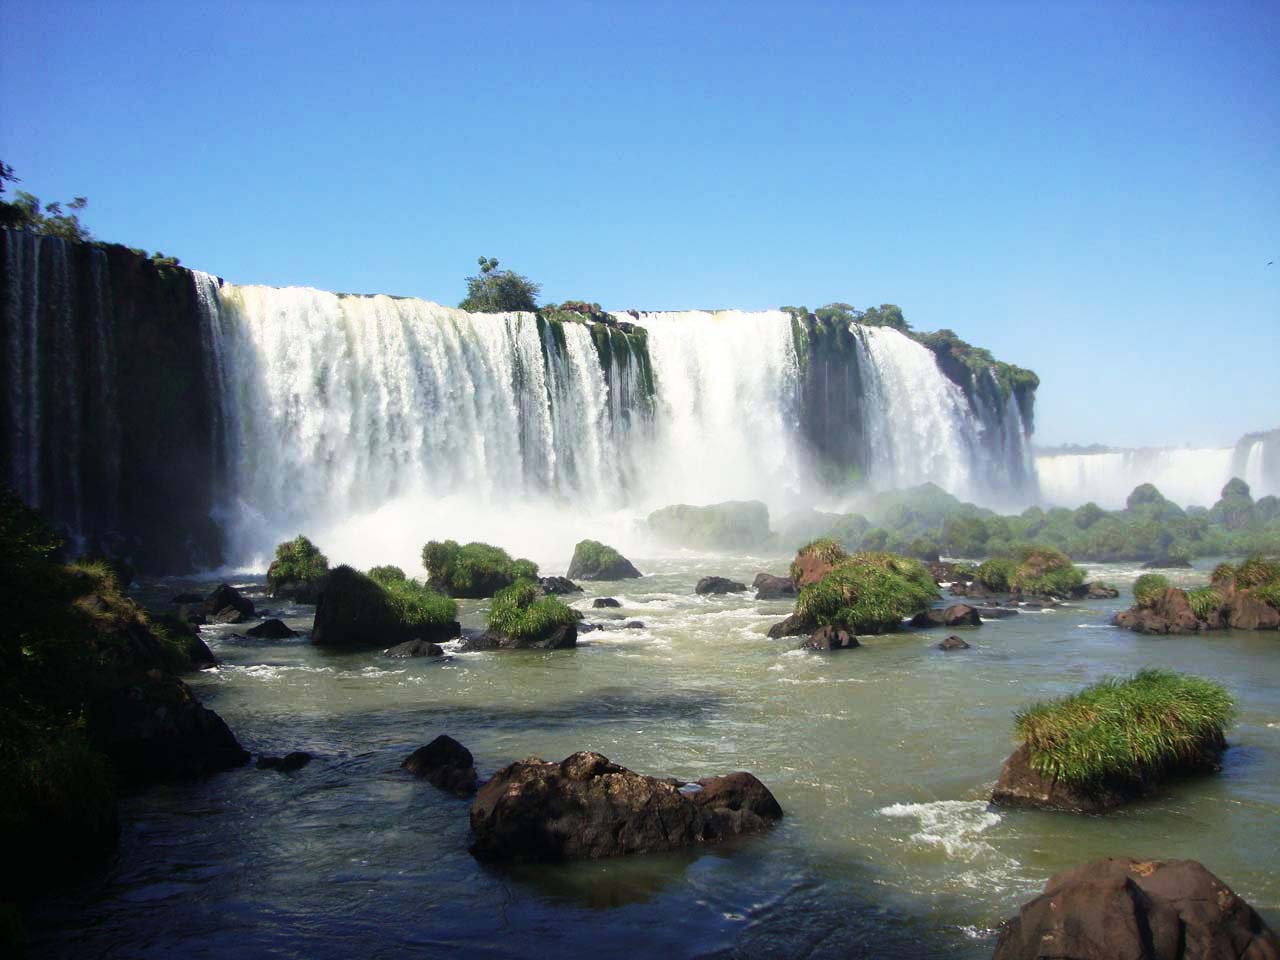 Cidades outono 2016 - Foz do Iguaçu - PR